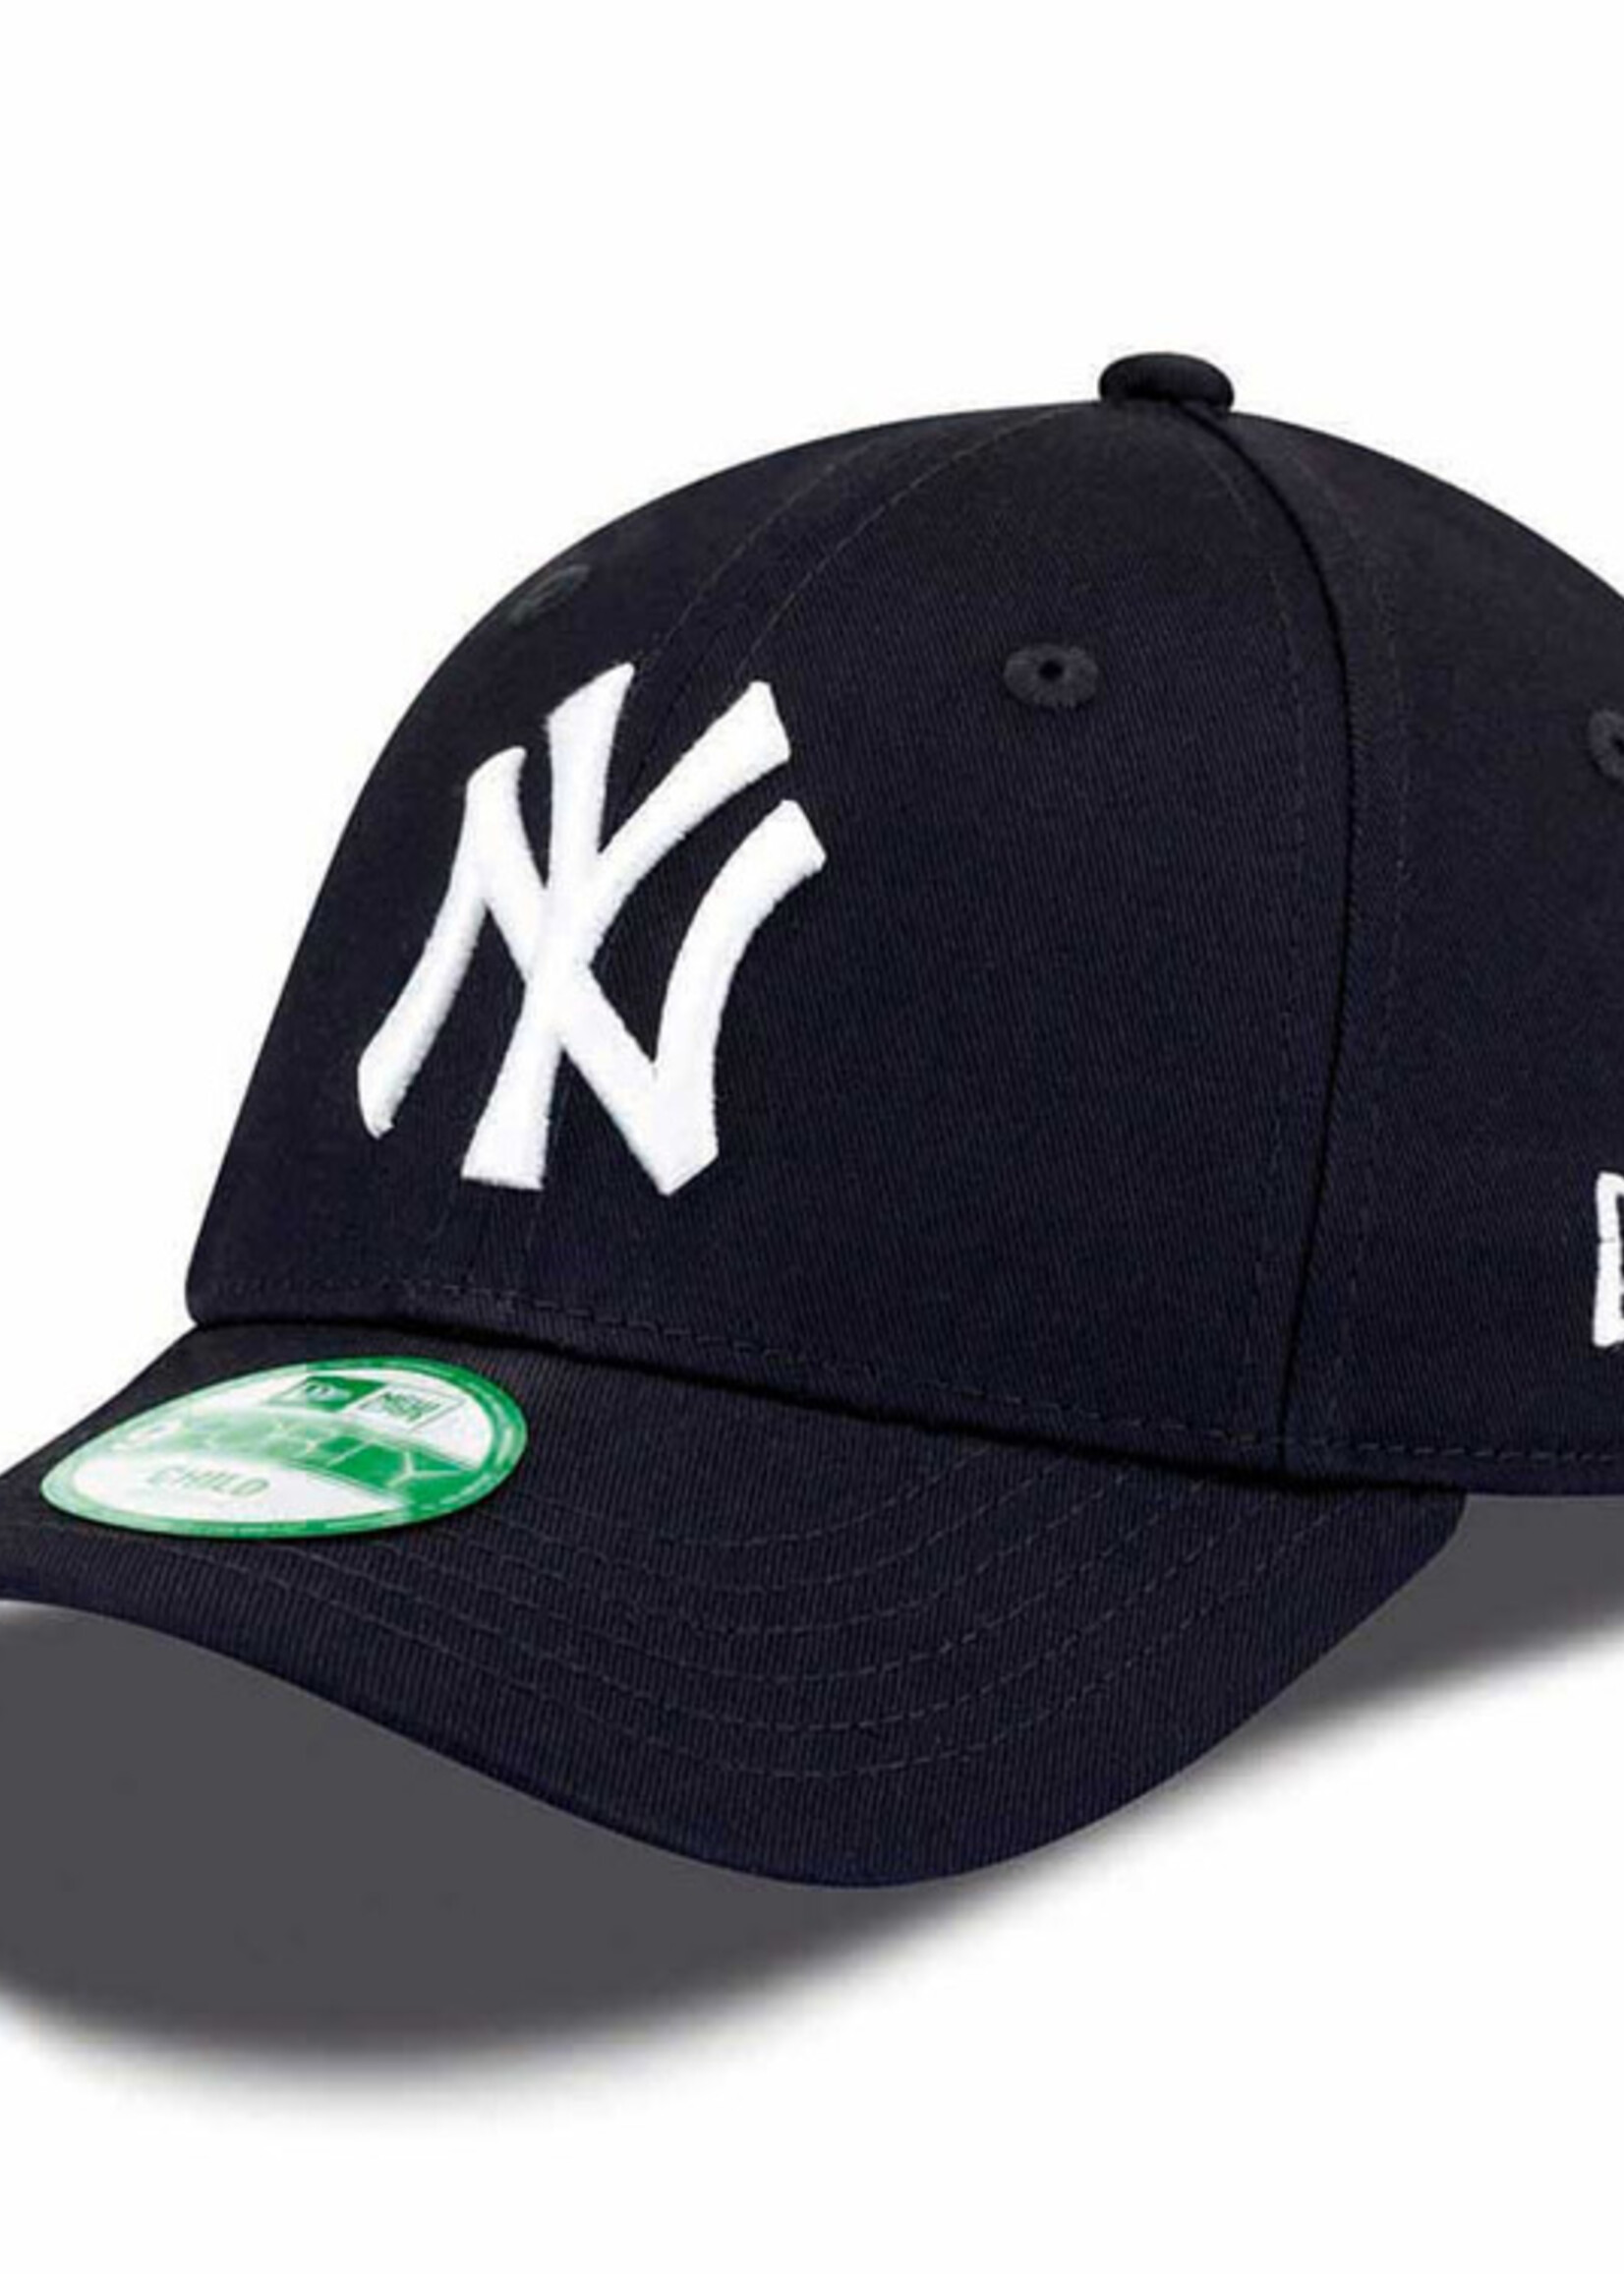 New Era New Era New York Yankees MLB 9Forty Youth Cap Donkerblauw